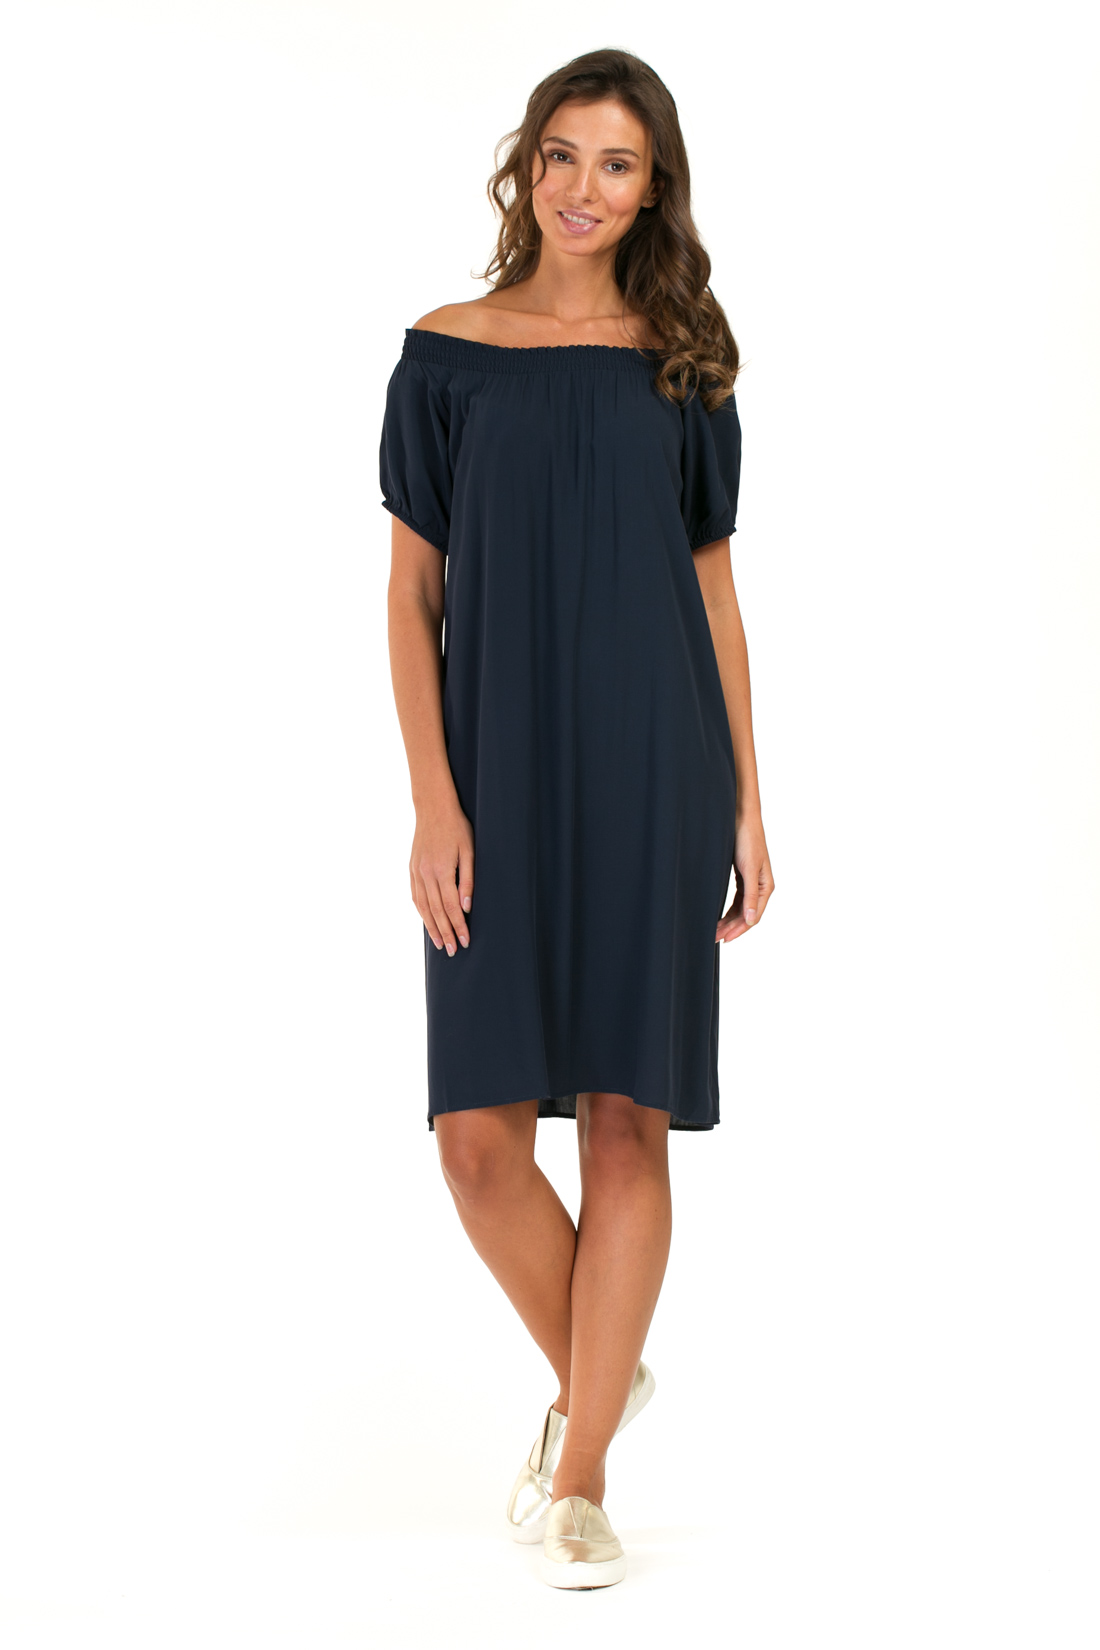 Платье с эластичным верхом (арт. baon B457054), размер L, цвет синий Платье с эластичным верхом (арт. baon B457054) - фото 1